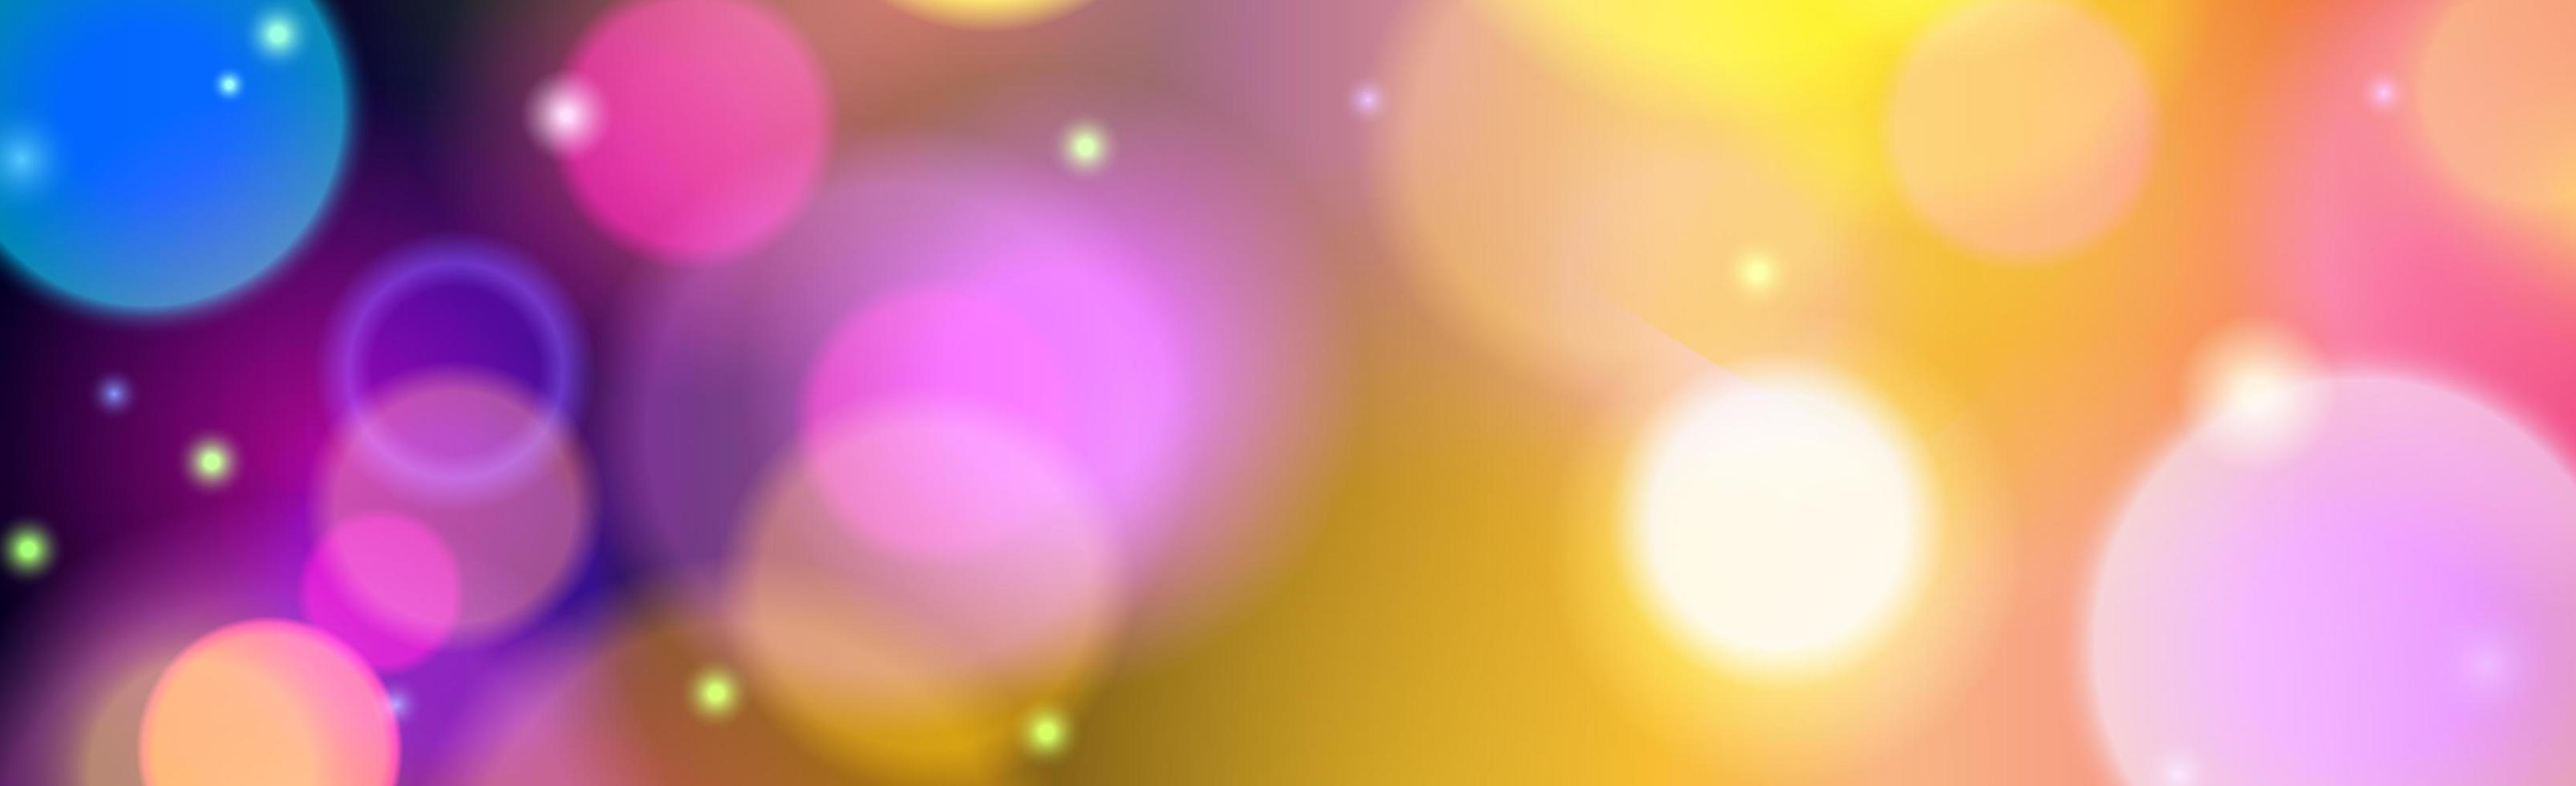 abstracte veelkleurige bokeh achtergrond met intreepupil cirkels en glitter. decoratie-element voor kerst- en nieuwjaarsvakanties, wenskaarten, webbanners, posters - vector